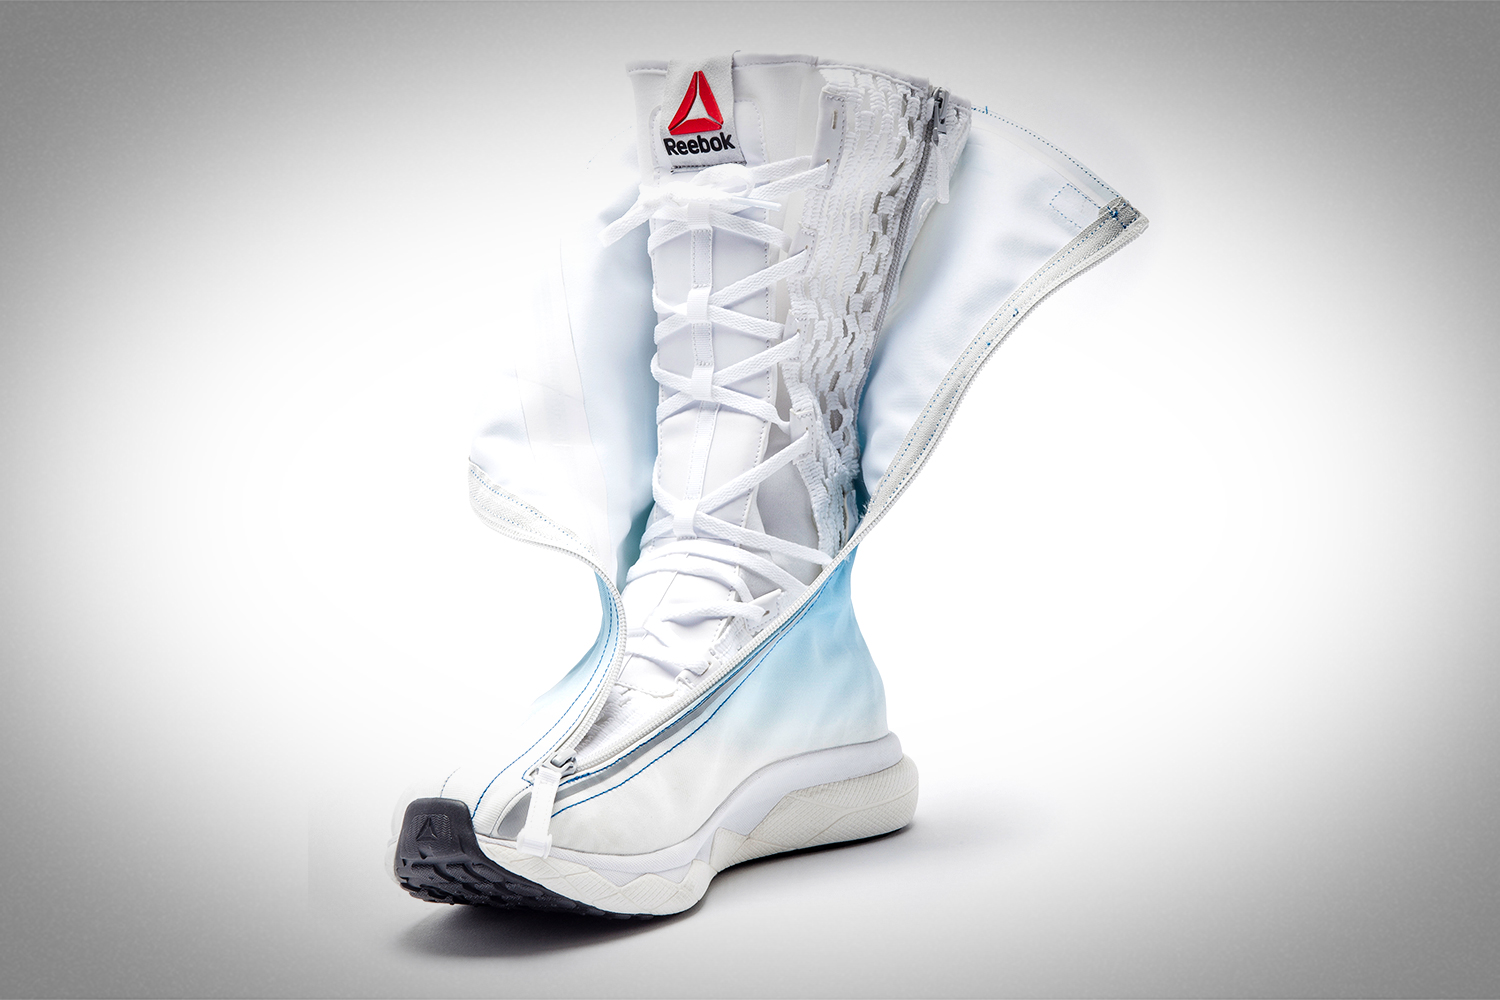 alineación Lágrima Plantando árboles Reebok Unveils Sleek New Space Boots for Future Astronauts | Space